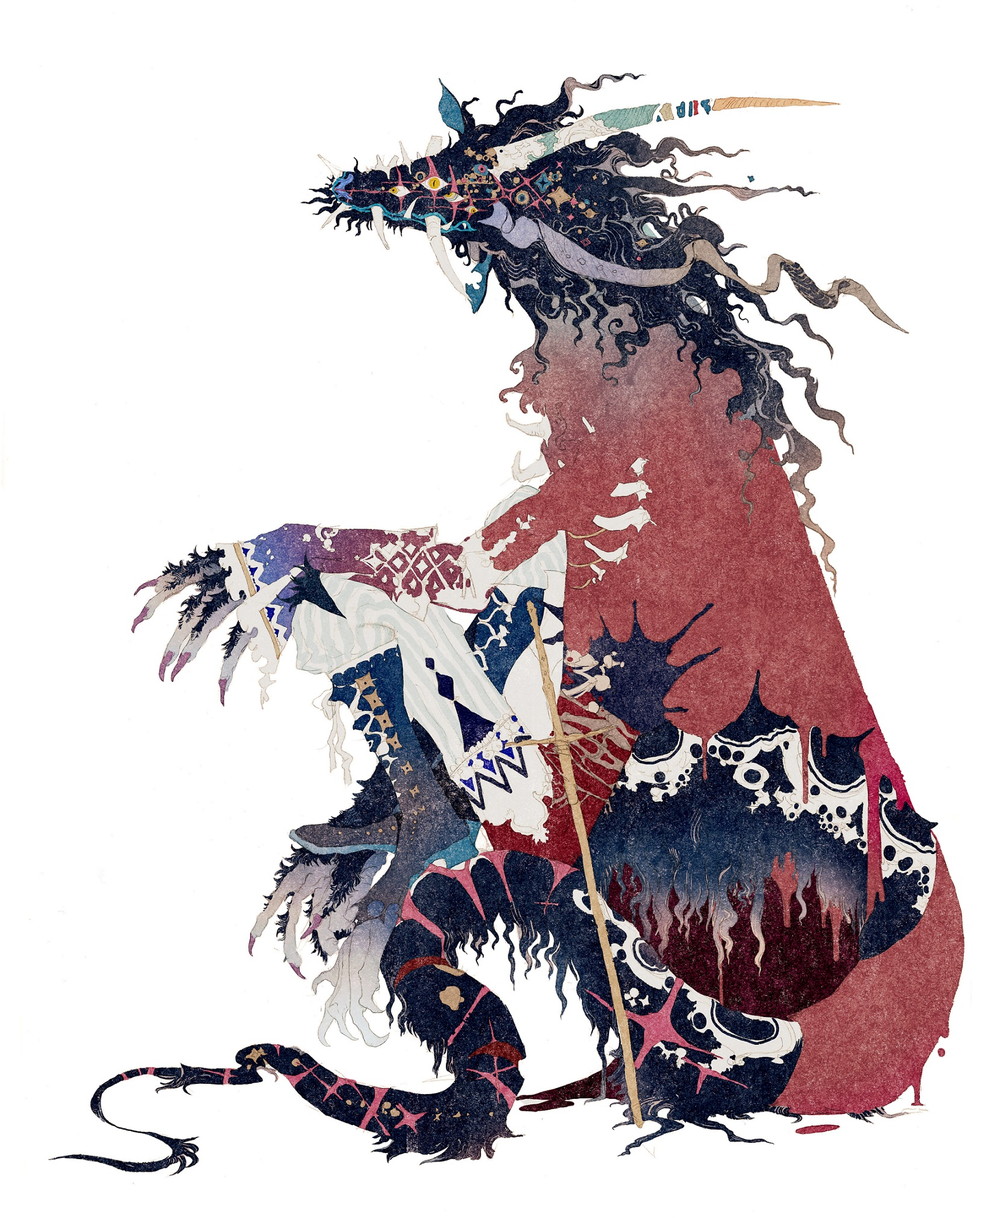 秋屋蜻一デザインの「竜」『竜とそばかすの姫』